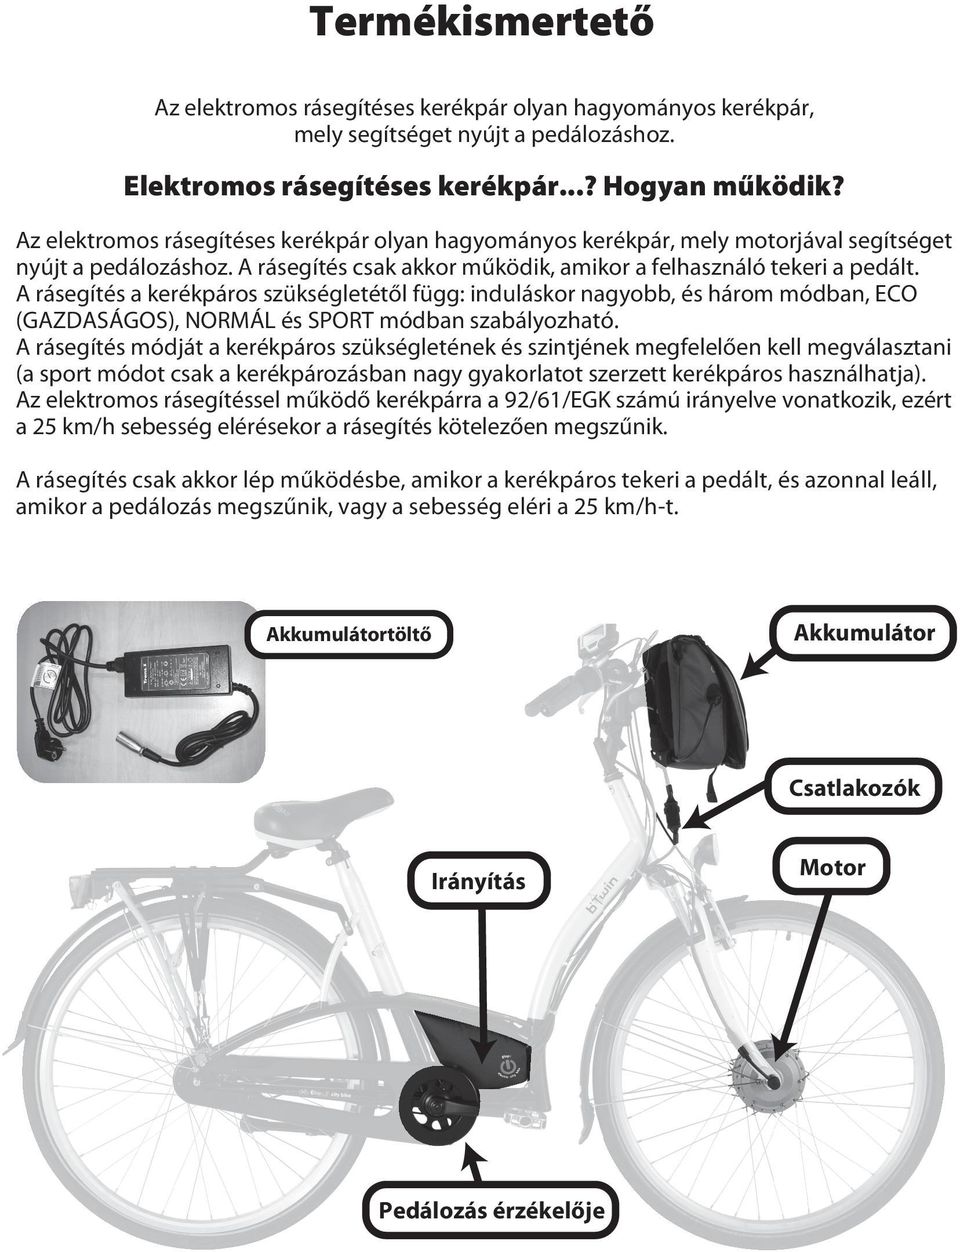 A rásegítés a kerékpáros szükségletétől függ: induláskor nagyobb, és három módban, ECO (GAZDASÁGOS), NORMÁL és SPORT módban szabályozható.